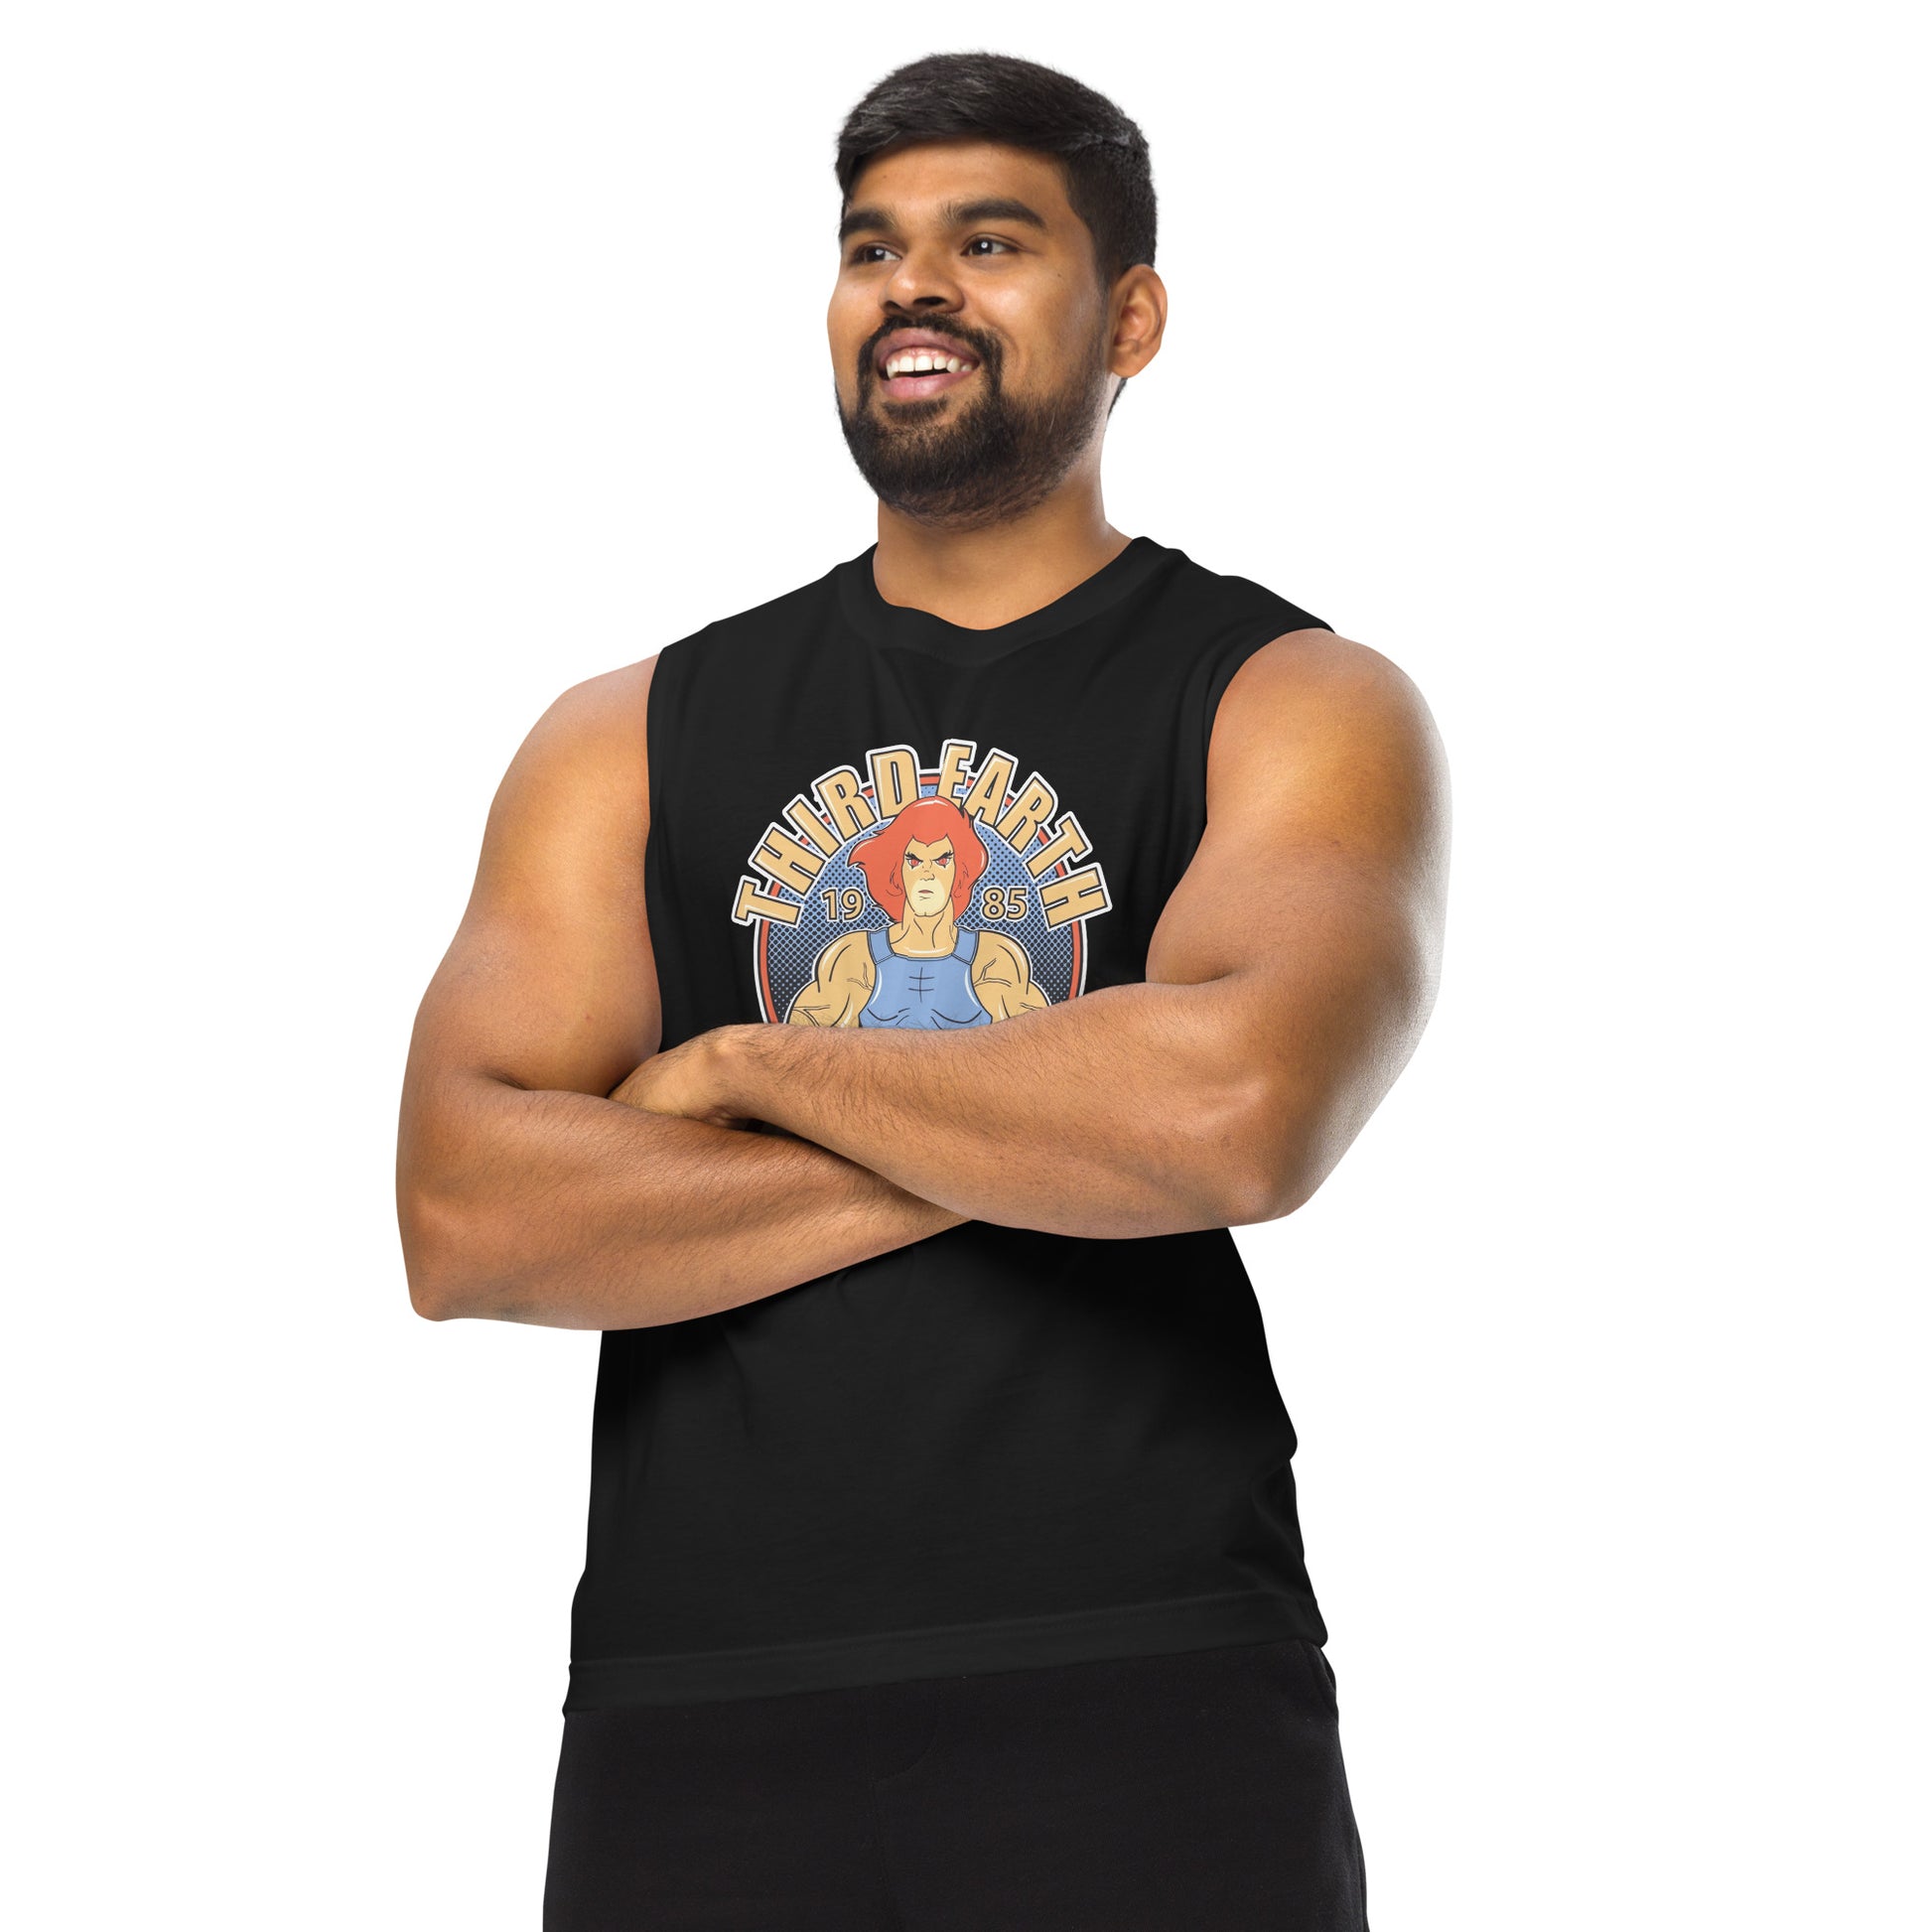 Camiseta sin mangas perfecta para entrenar, Camiseta Third Earth Gym comprala en línea y experimenta el mejor servicio al cliente. 